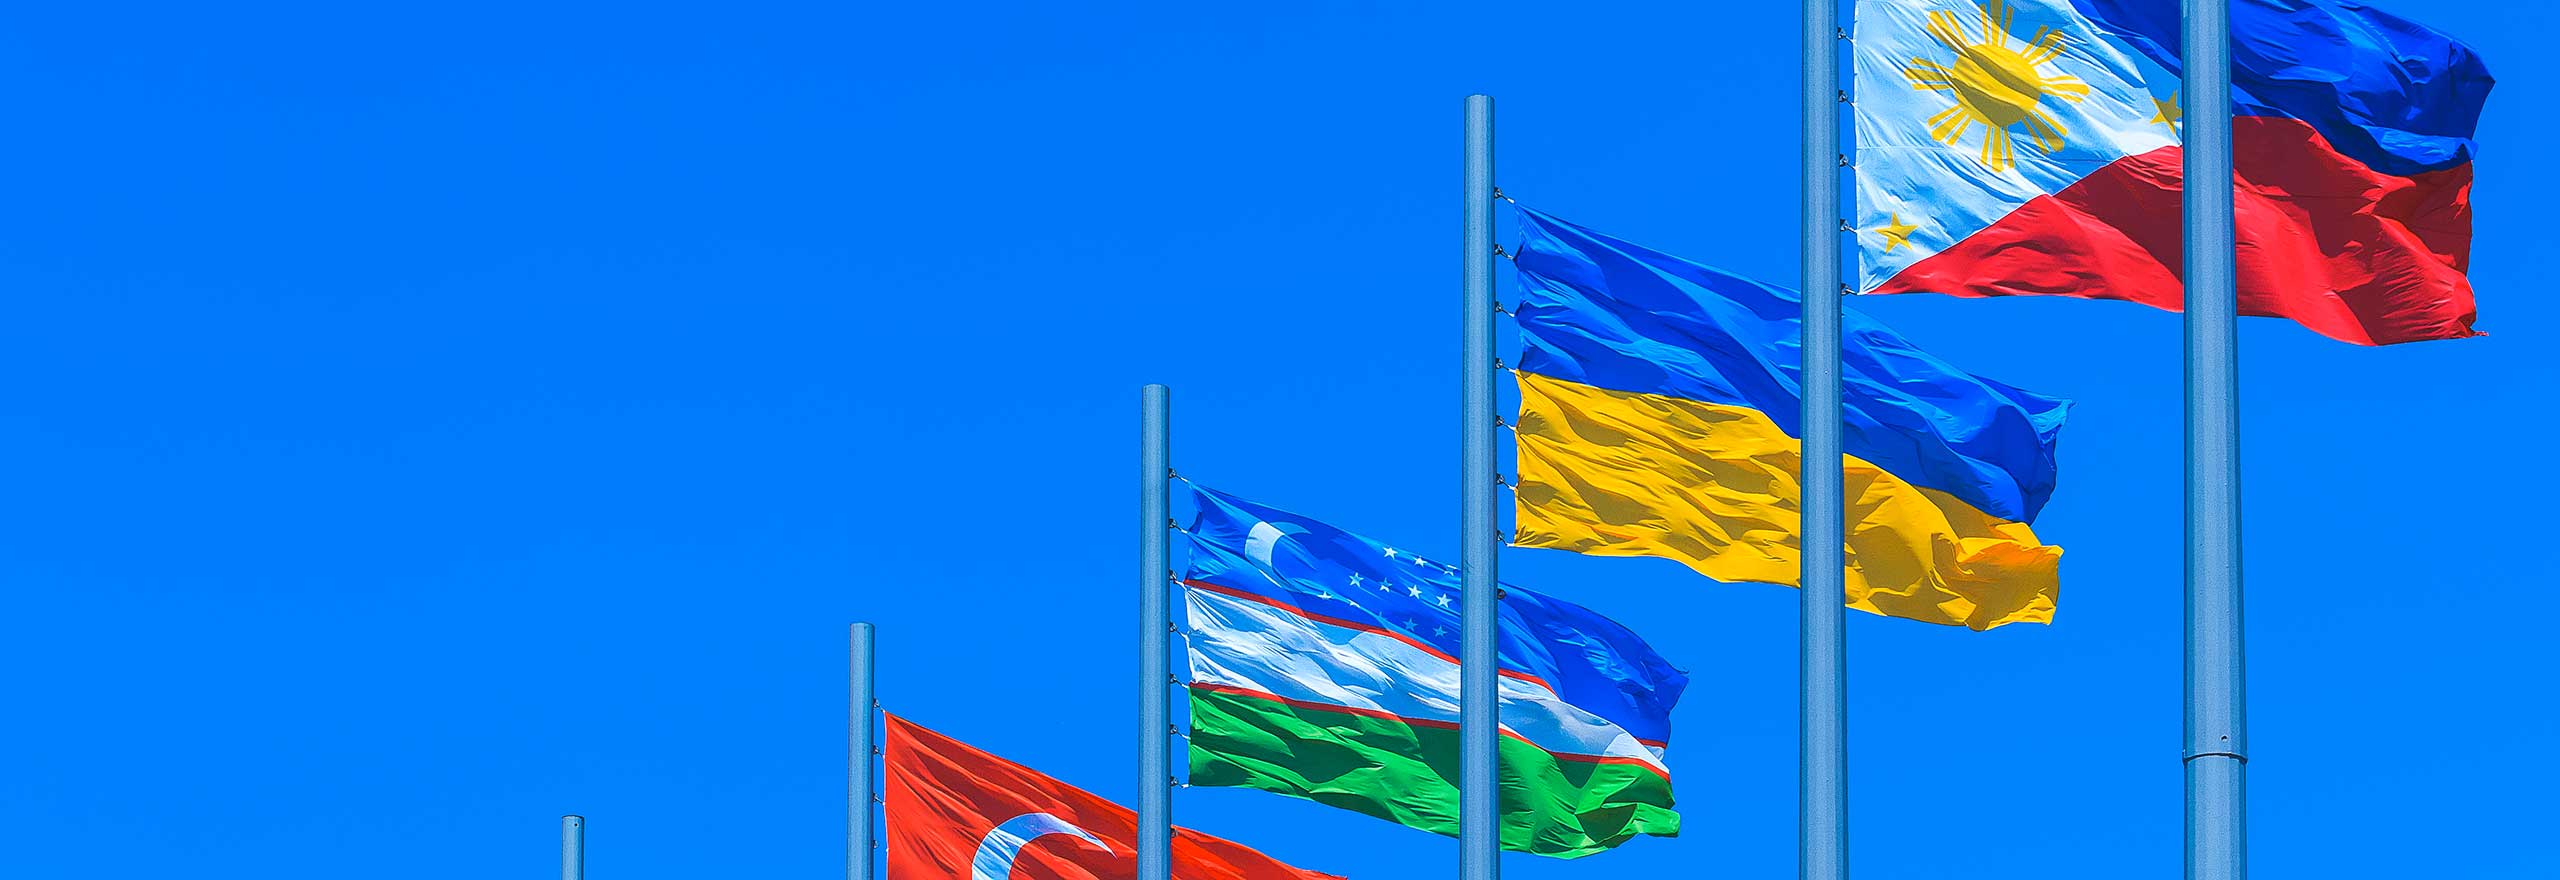 Bandiere di più nazioni che sventolano sotto un cielo blu